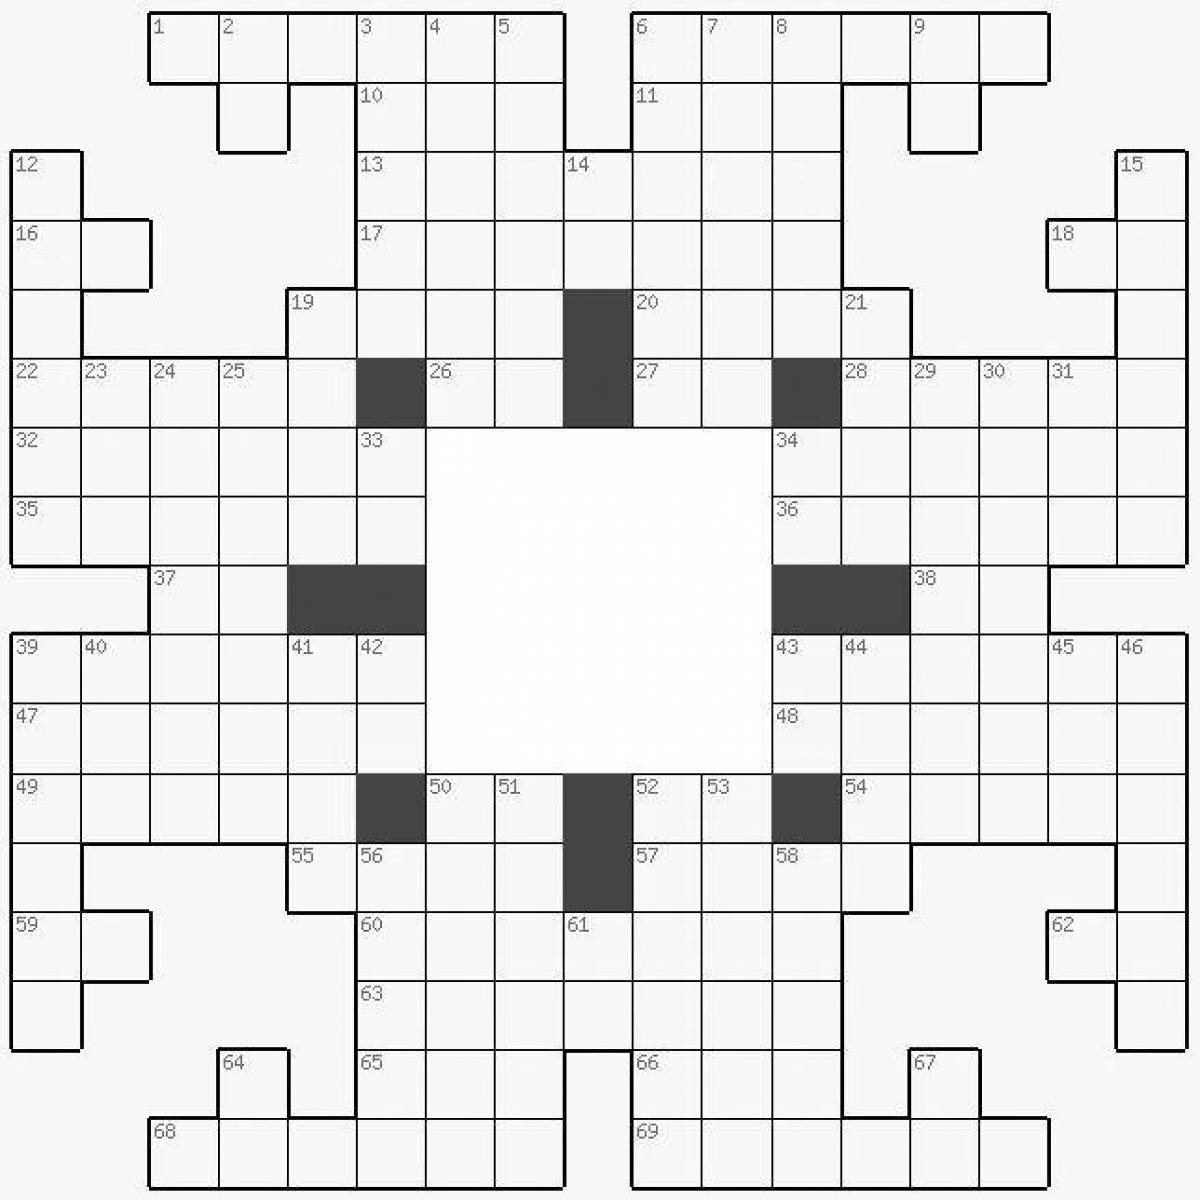 Ceramic tiles handmade 7 letters crossword answer #9